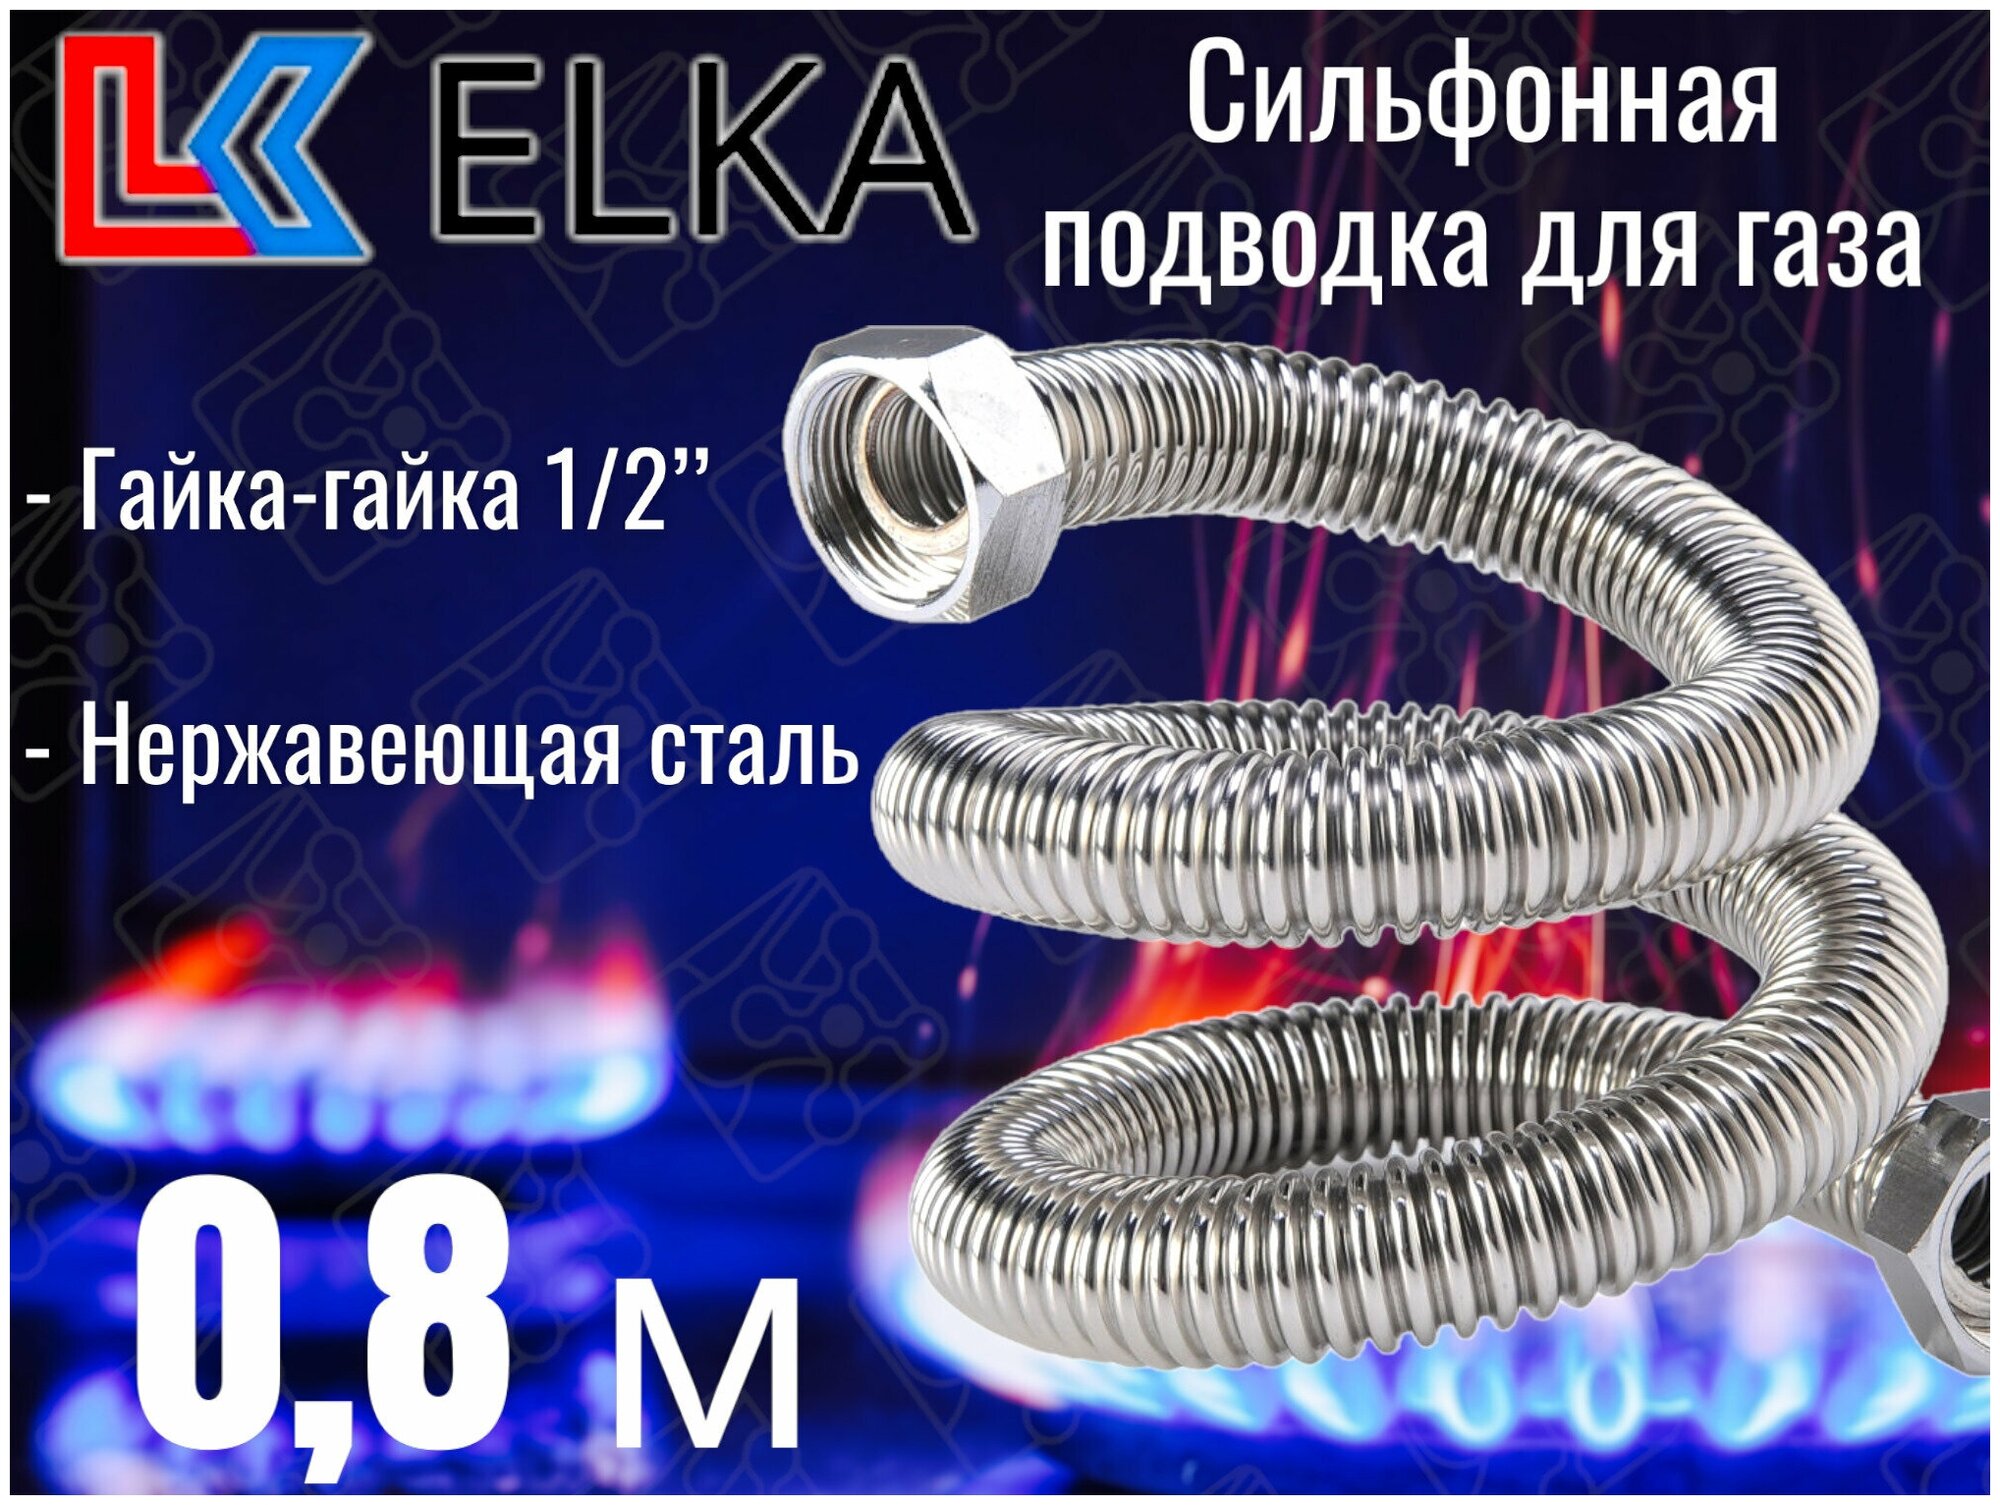 Сильфонная подводка для газа 0,8 м ELKA 1/2" г/г (в/в) / Шланг газовый / Подводка для газовых систем 80 см